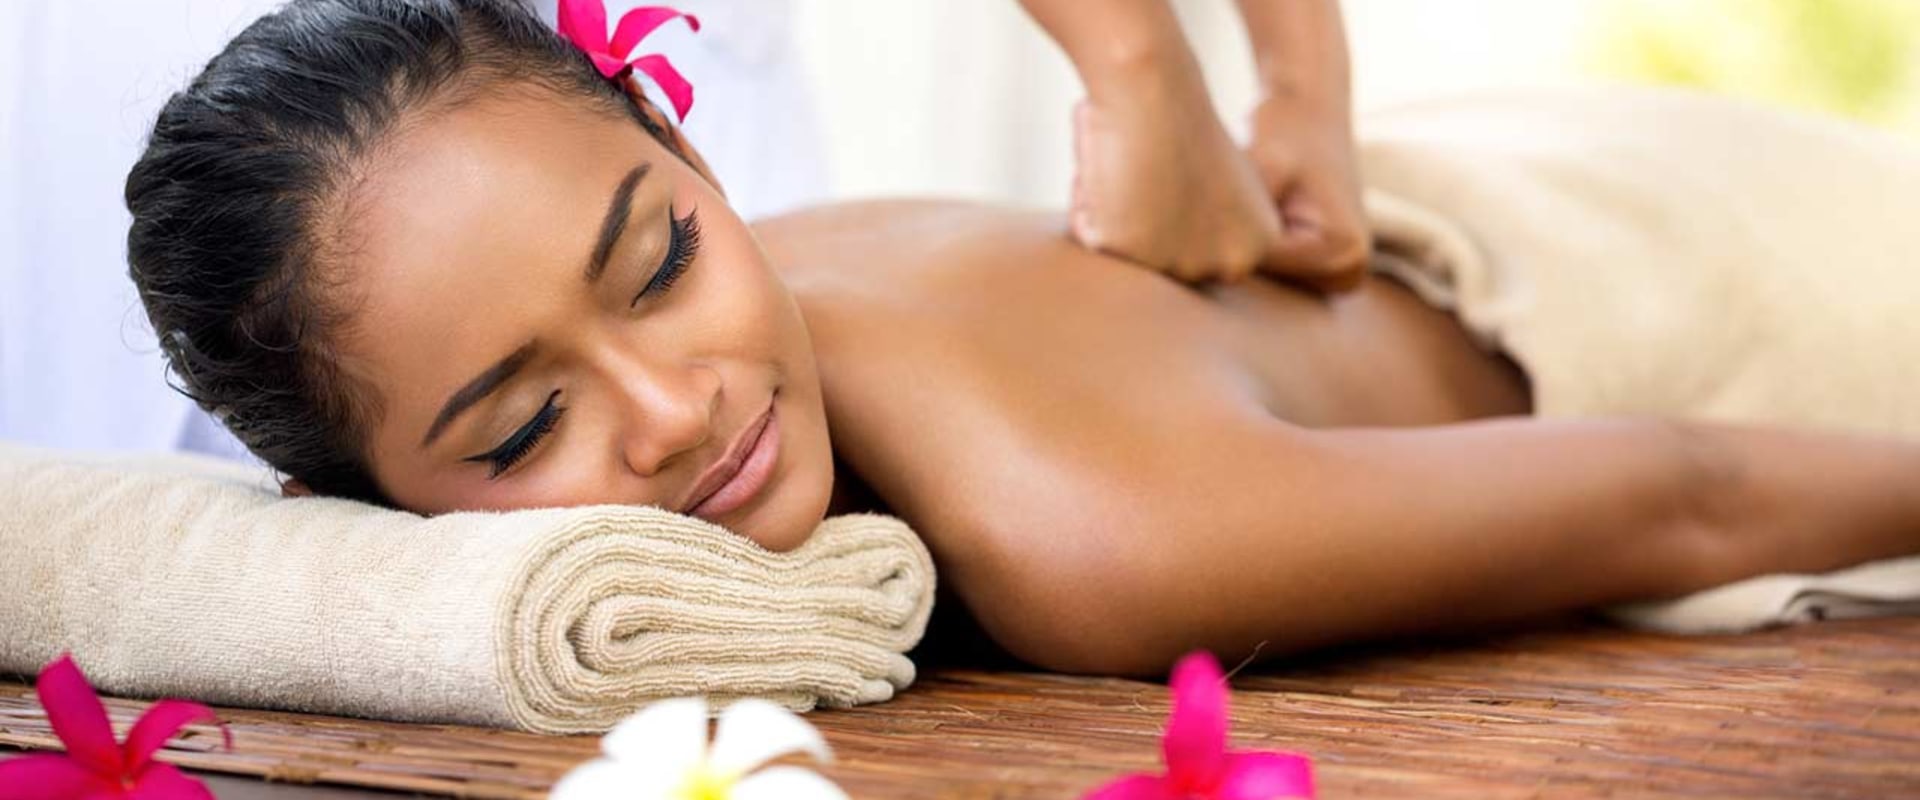 Wie oft sollte man eine thailändische massage erhalten?